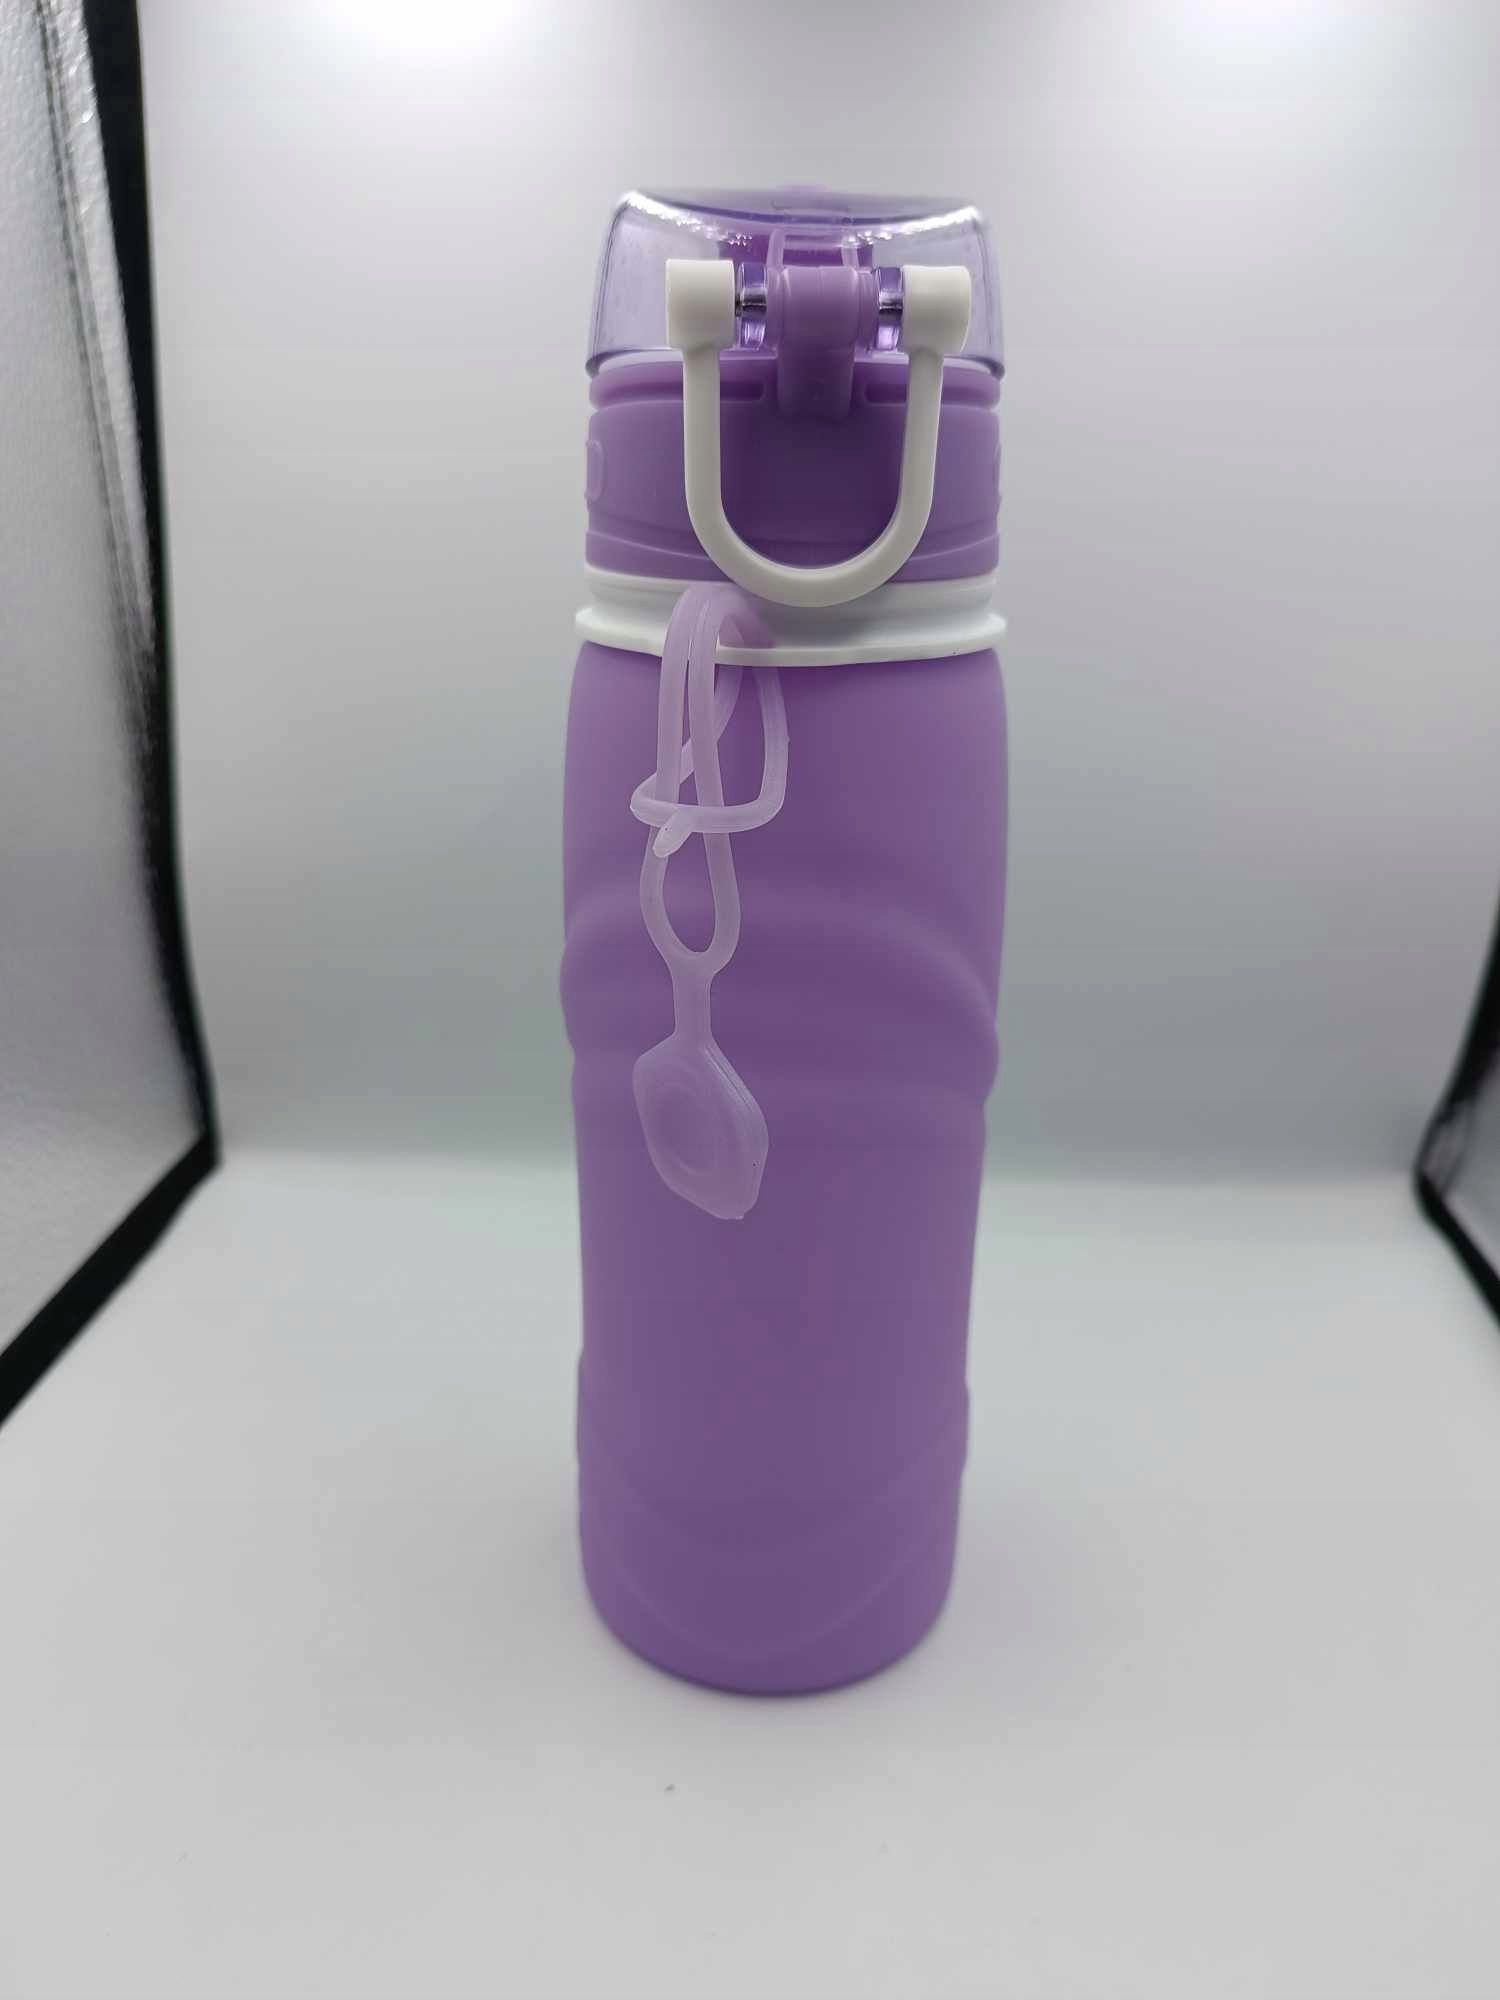 Kemier 750 ml Składana silikonowa butelki na wodę fioletowa